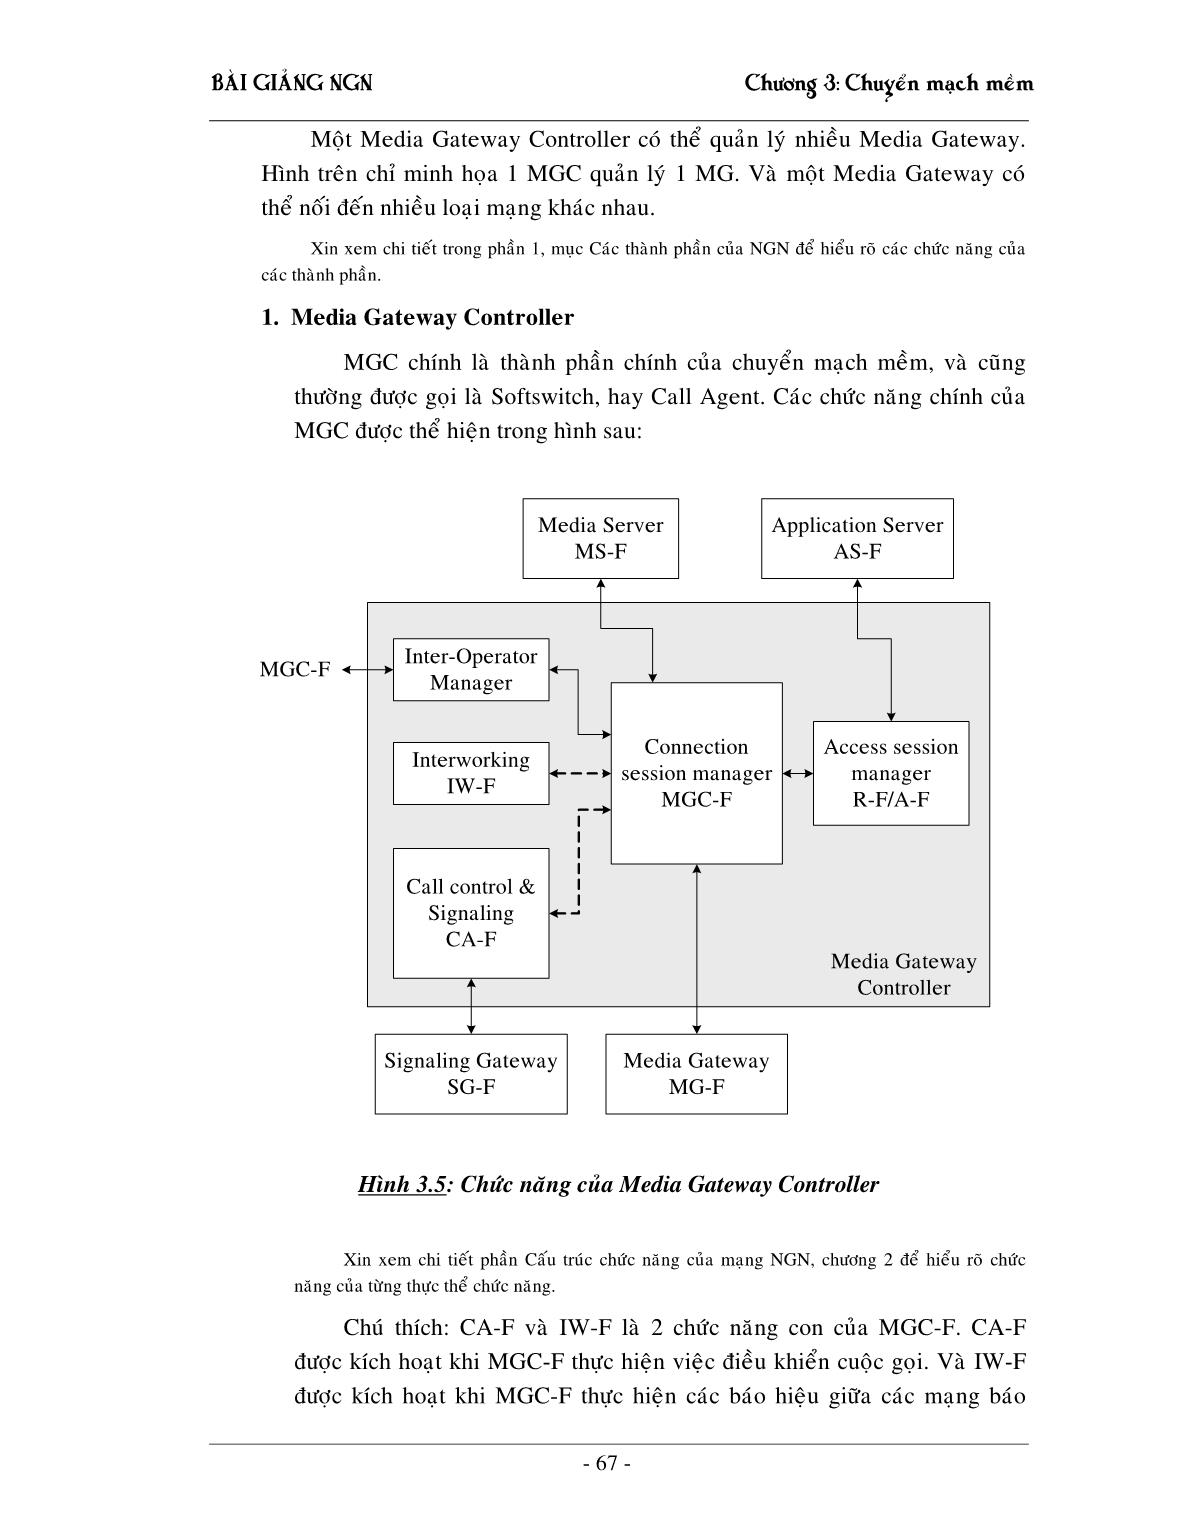 Bài giảng NGN - Chương 3: Chuyển mạch mềm Softswitching trang 9